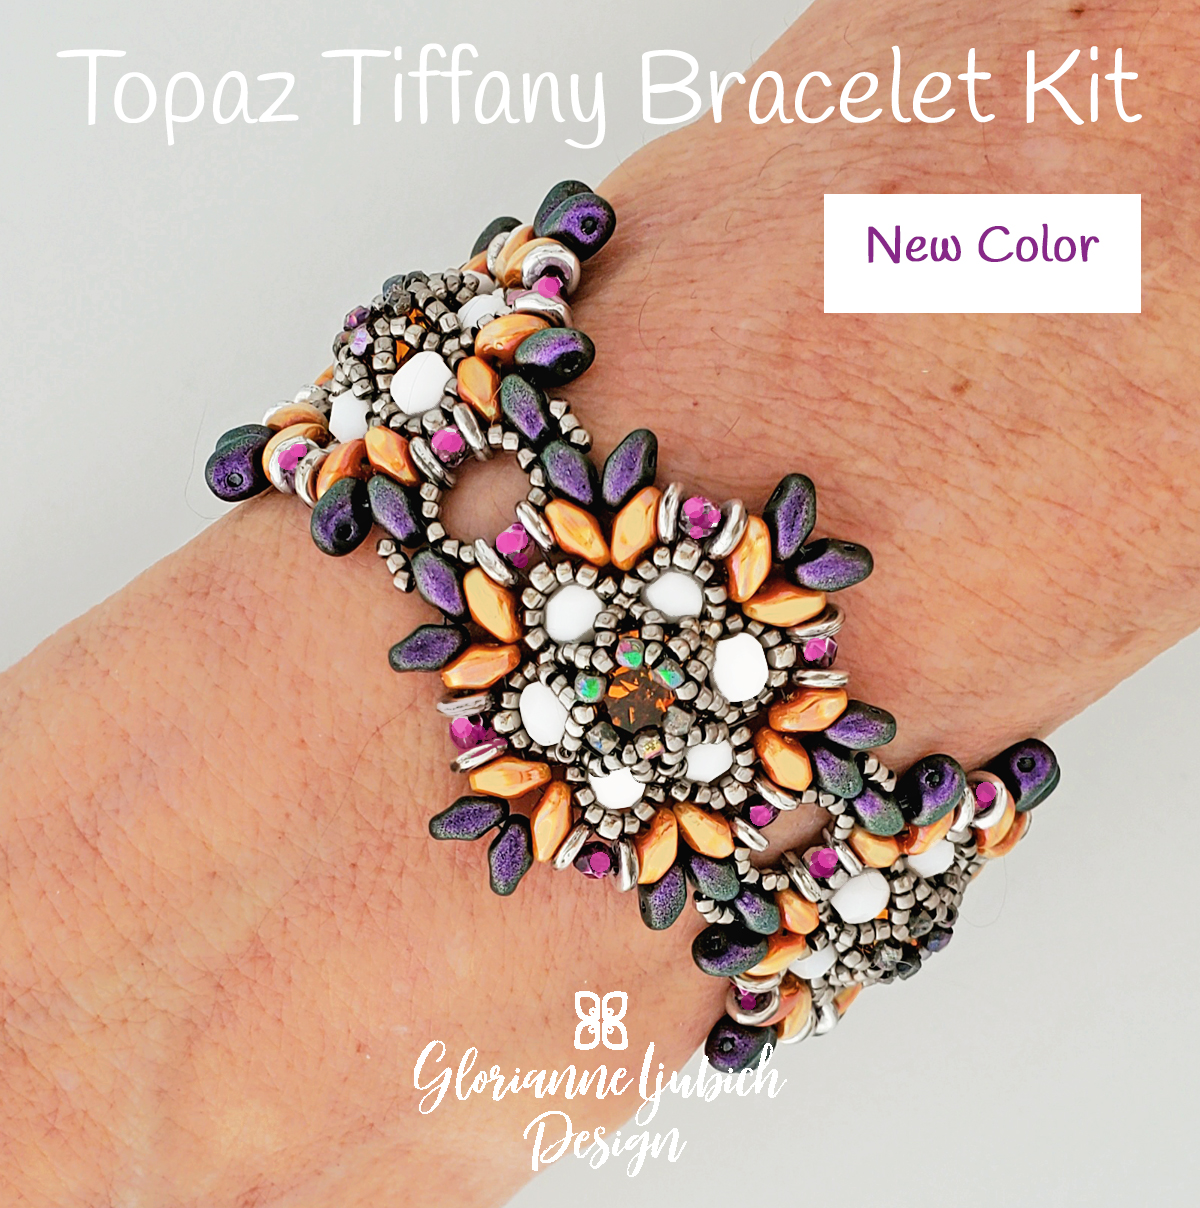 Topaz Tiffany Beaded Bracelet Kit